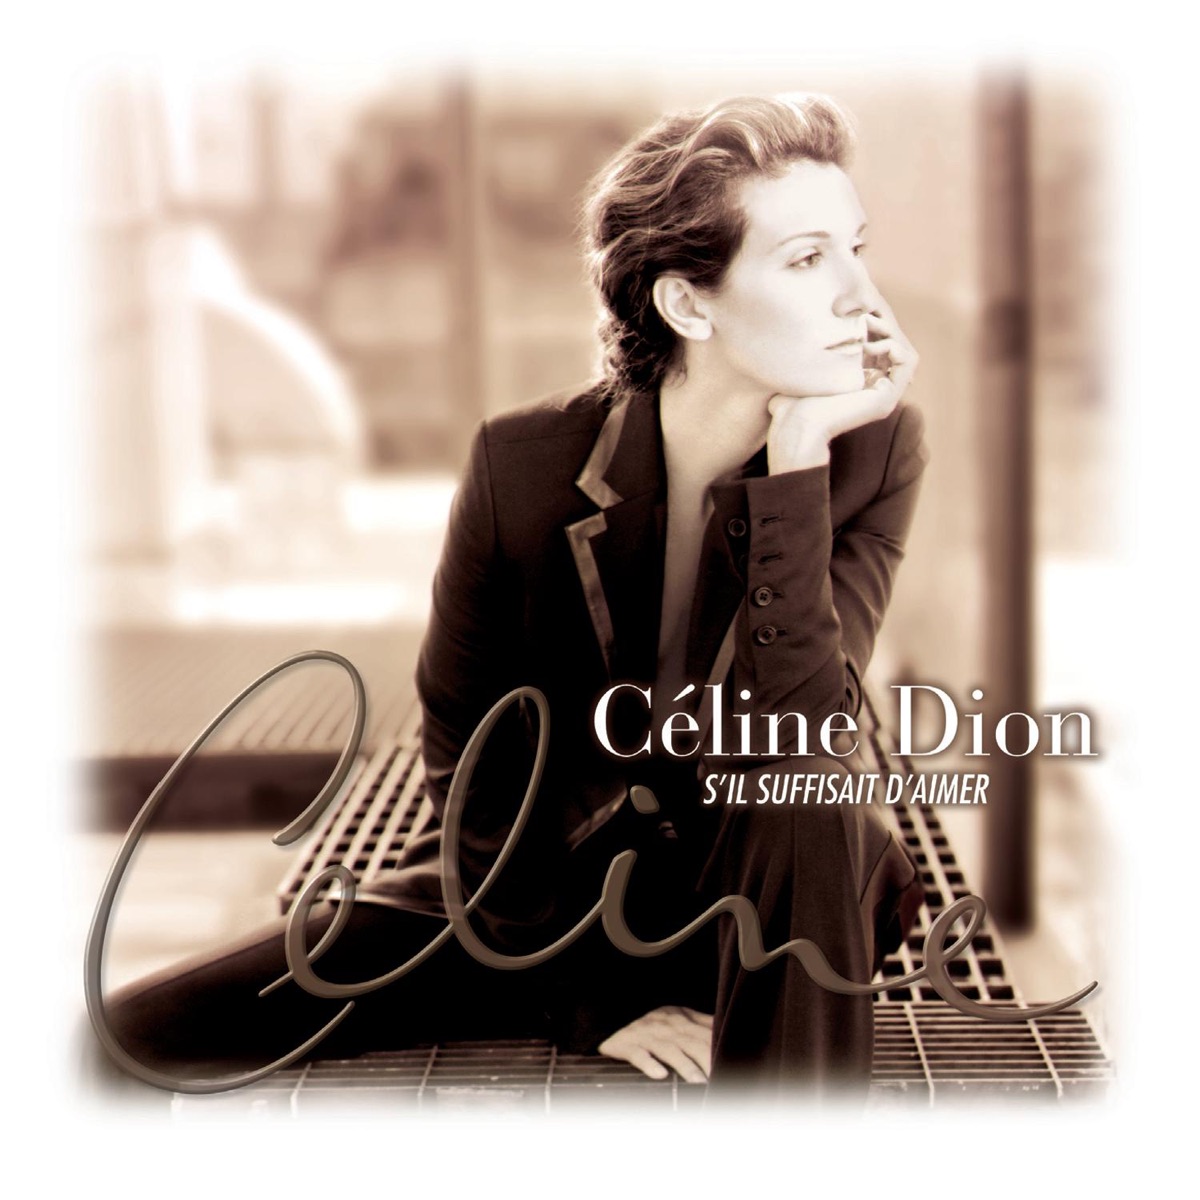 Céline Dion - S'il suffisait d'aimer